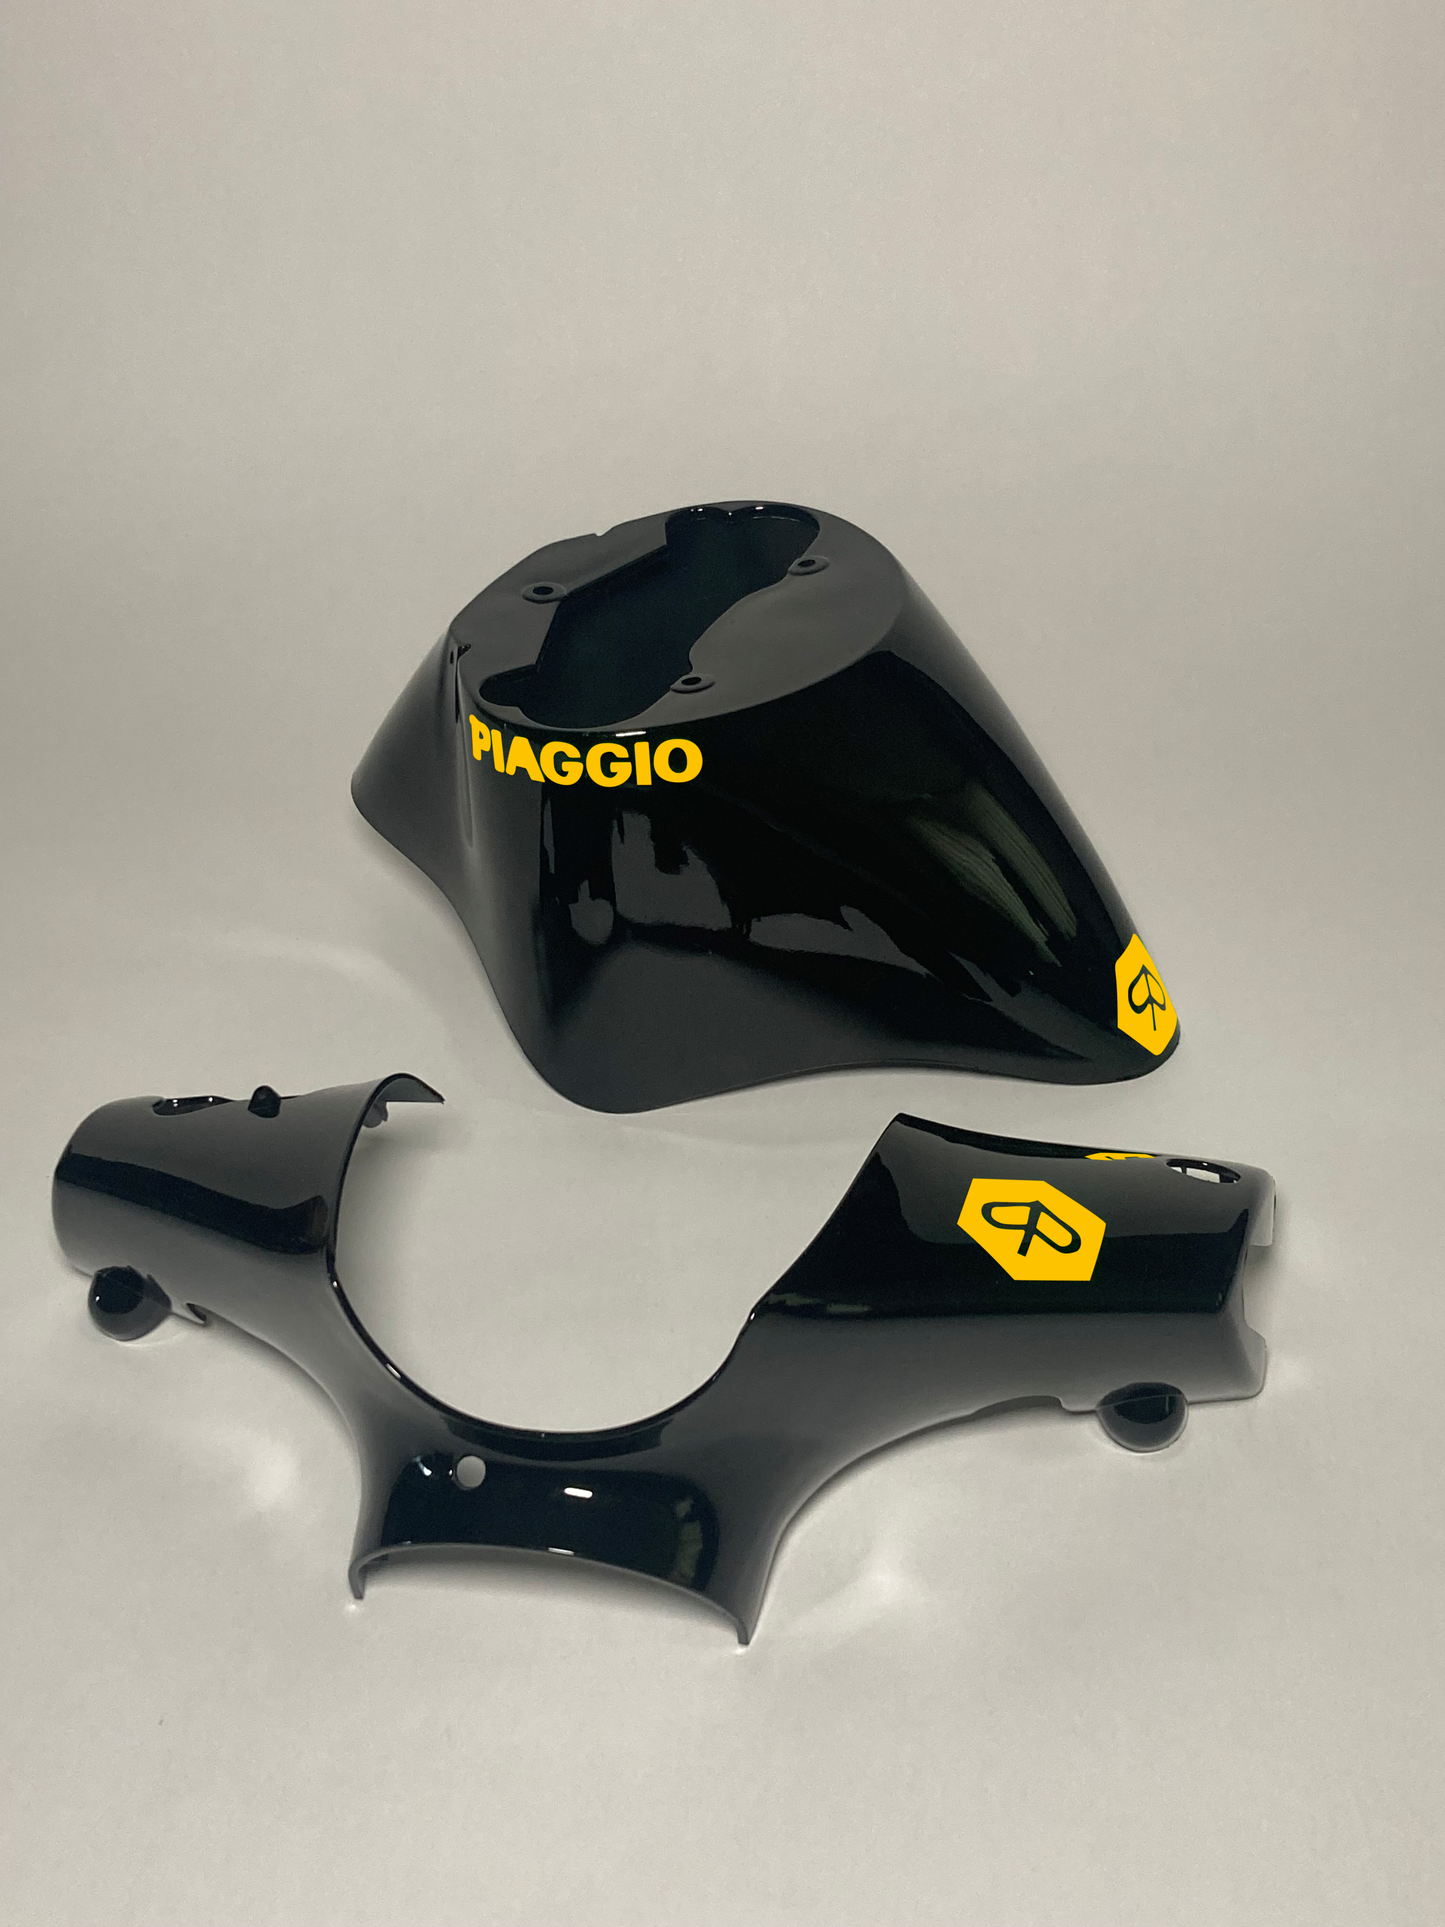 Reißverschluss Piaggio | Gelb